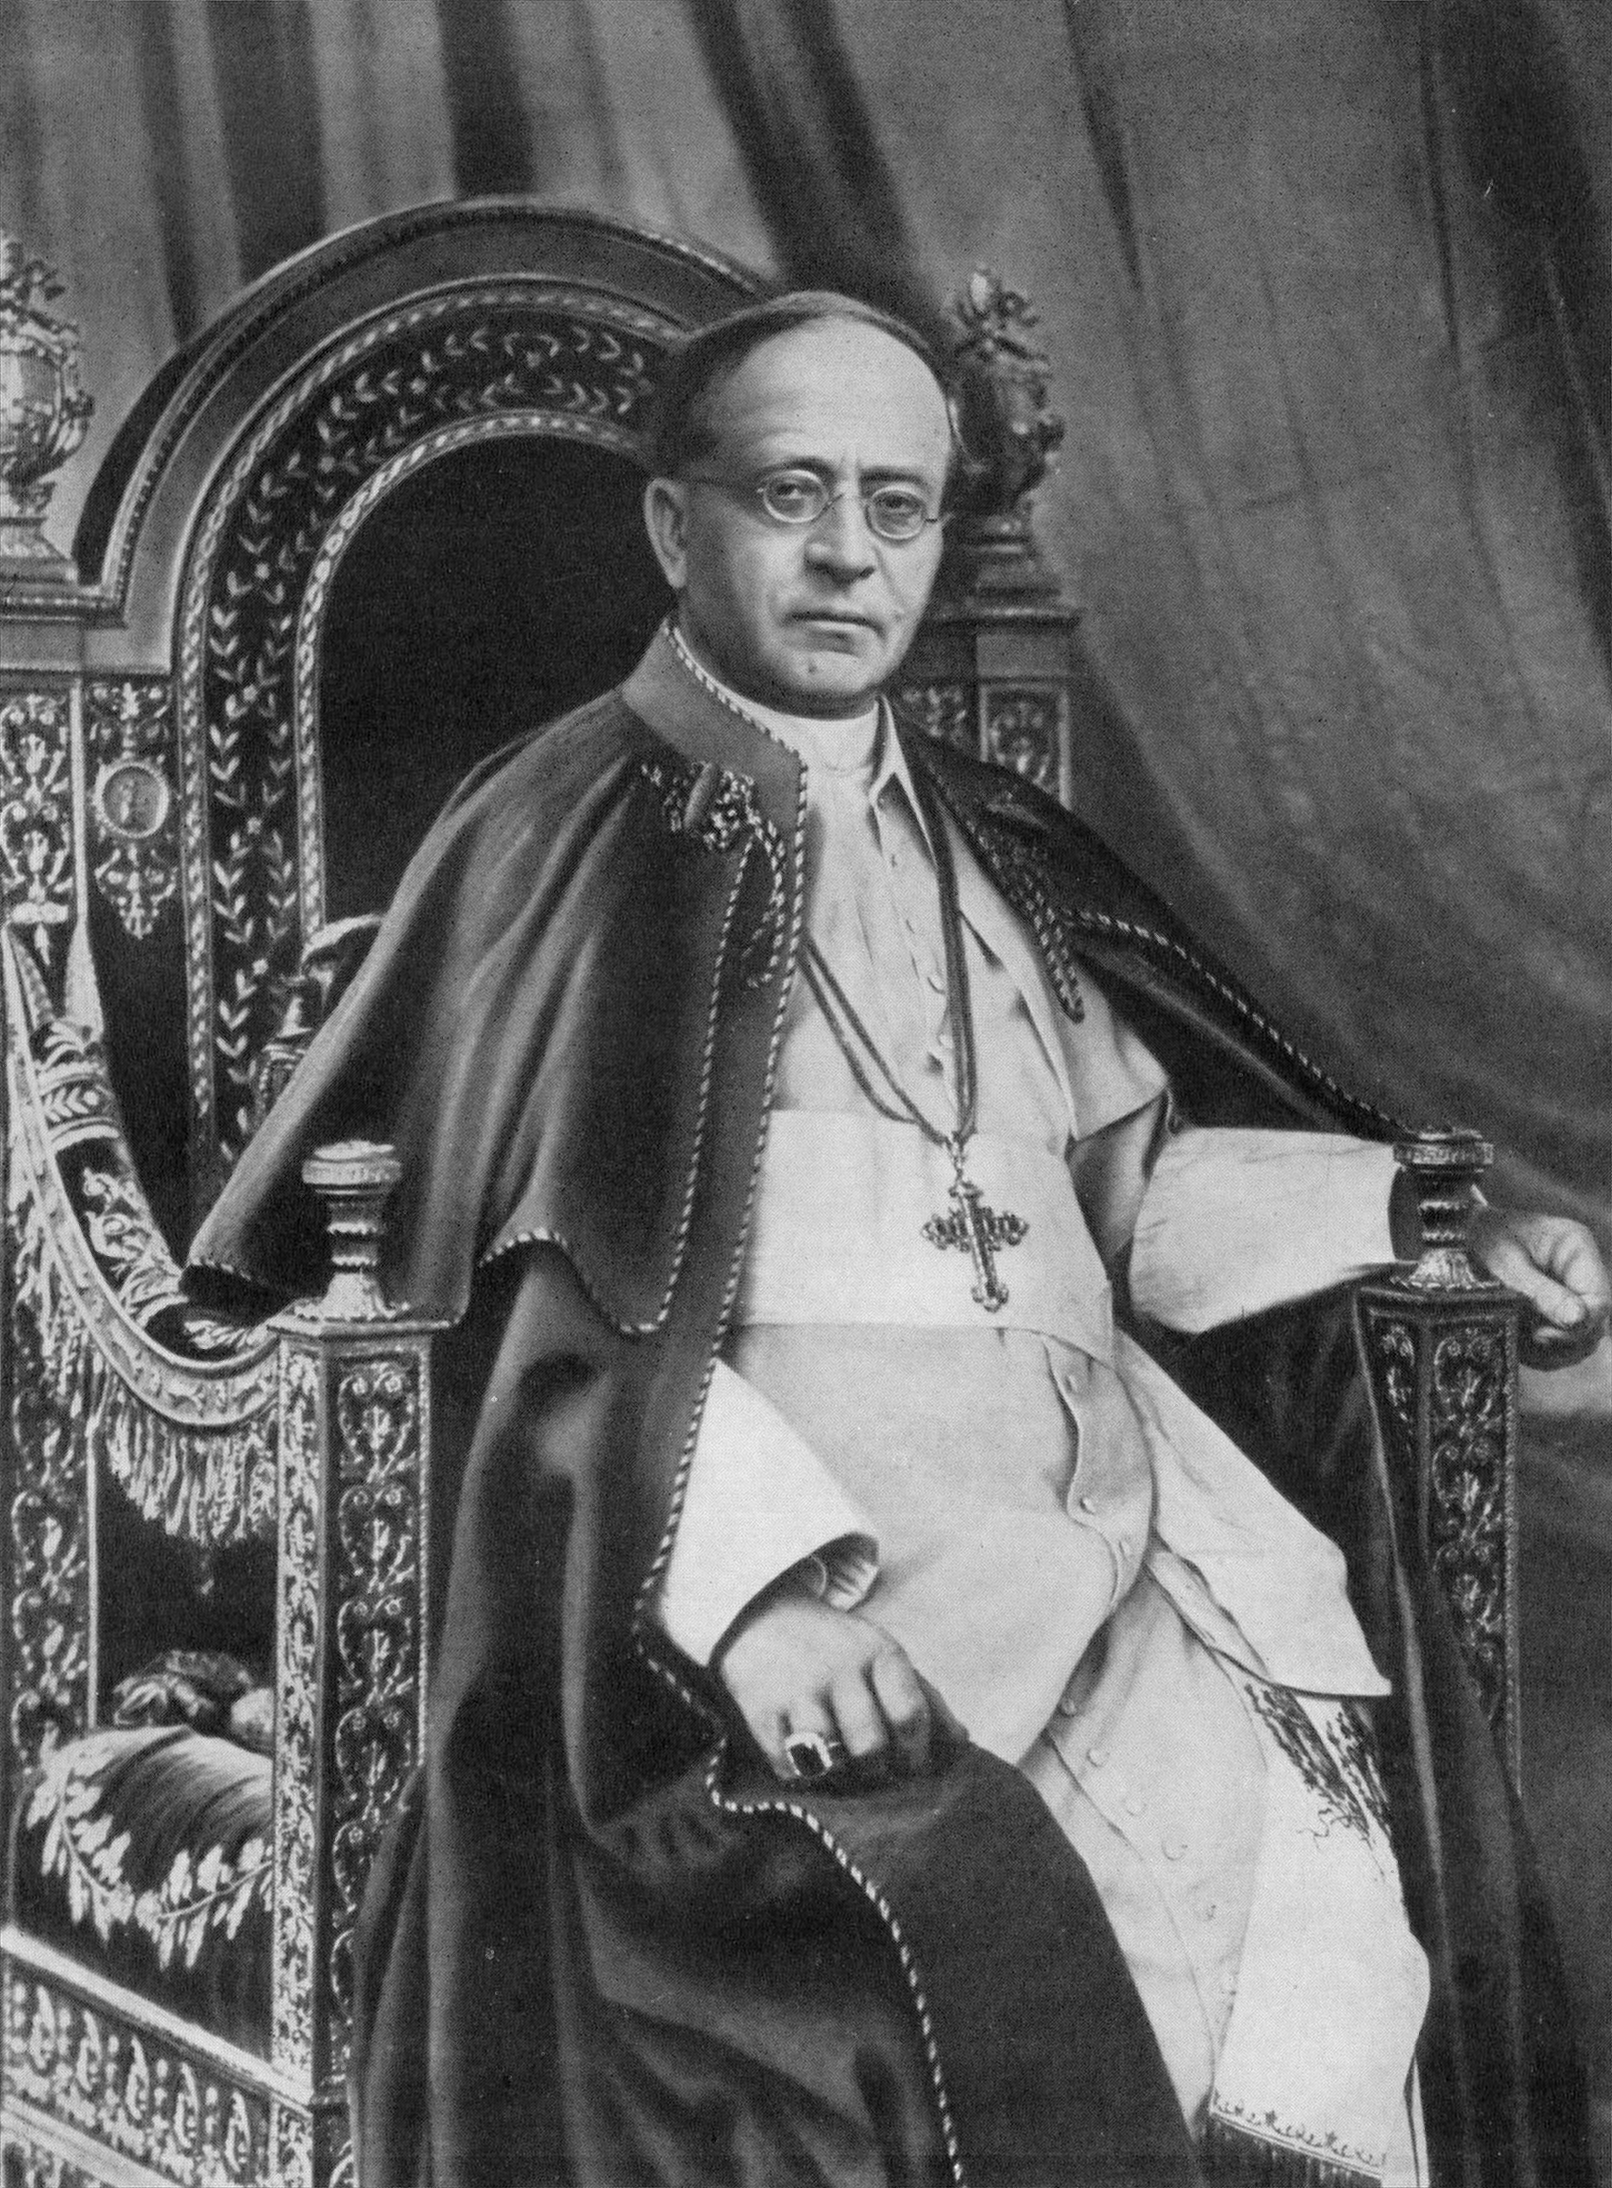 Image of Pius XI